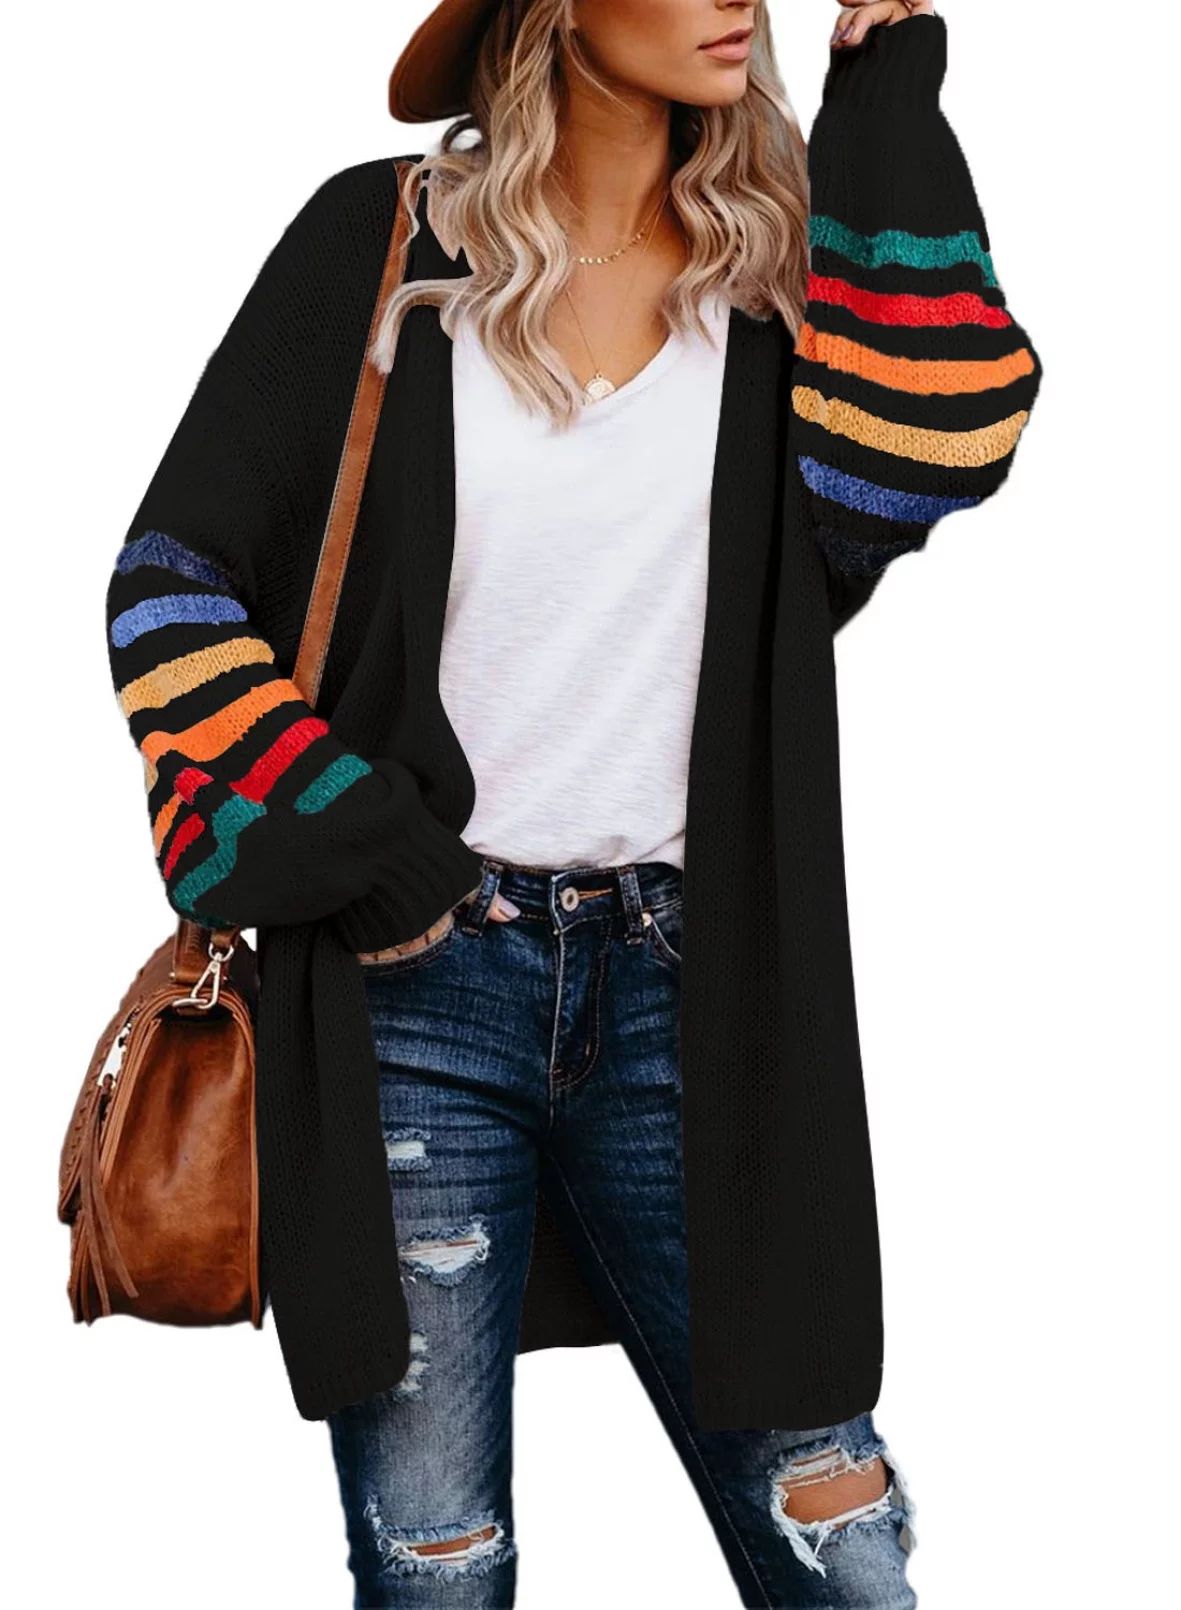 Aleumdr Women's Striped Knitted Cardigan Winter Warm Black Batwing Sleeve Outwear Coat 8 10 - Wal... | Walmart (US)